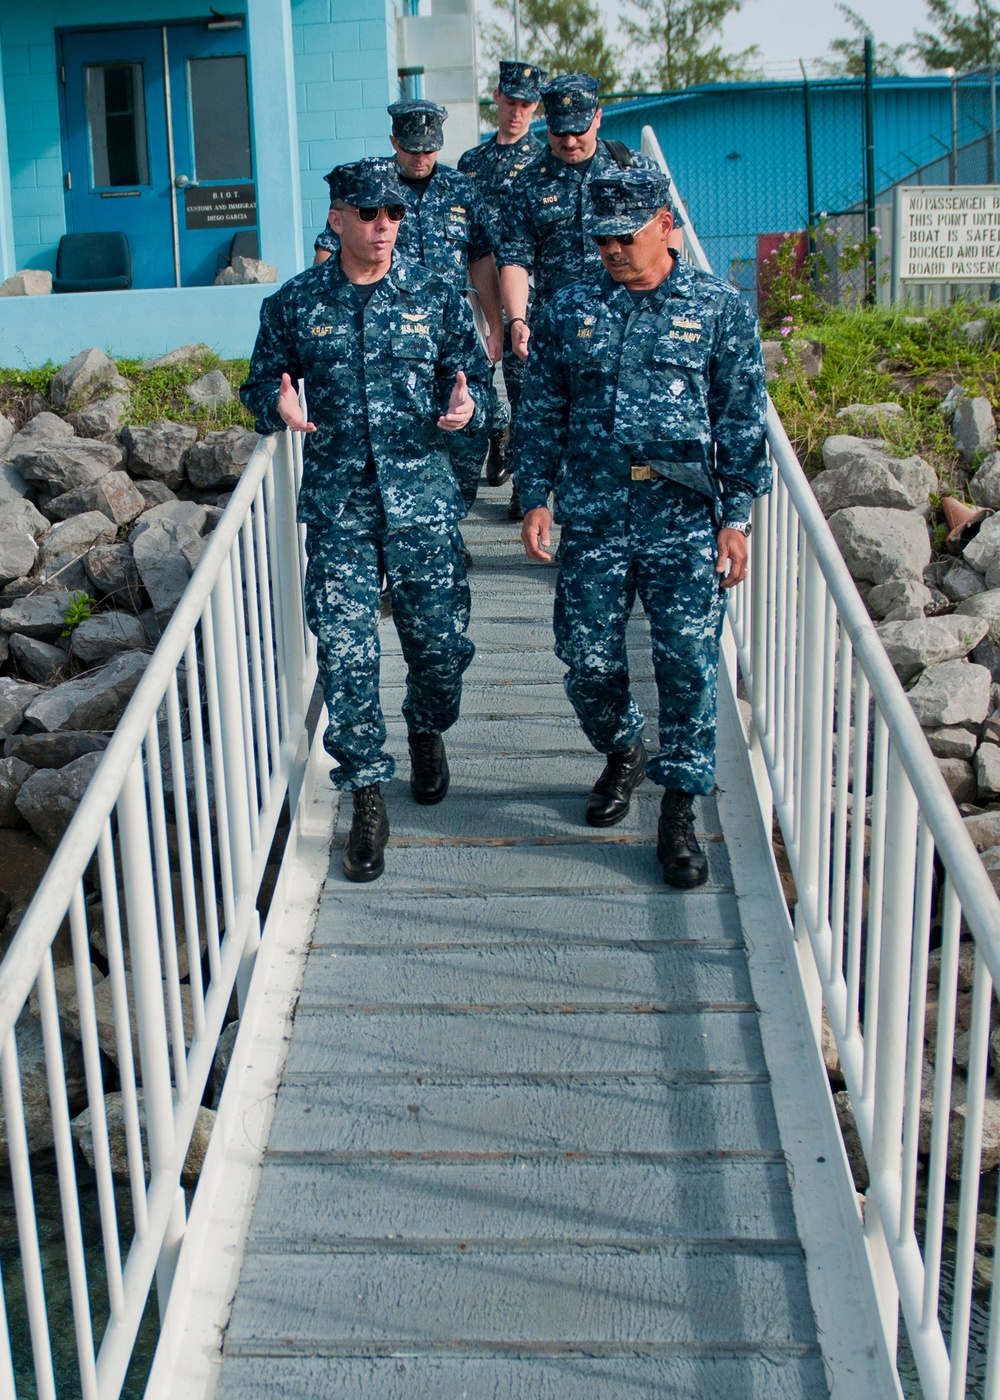 Diego Garcia visit